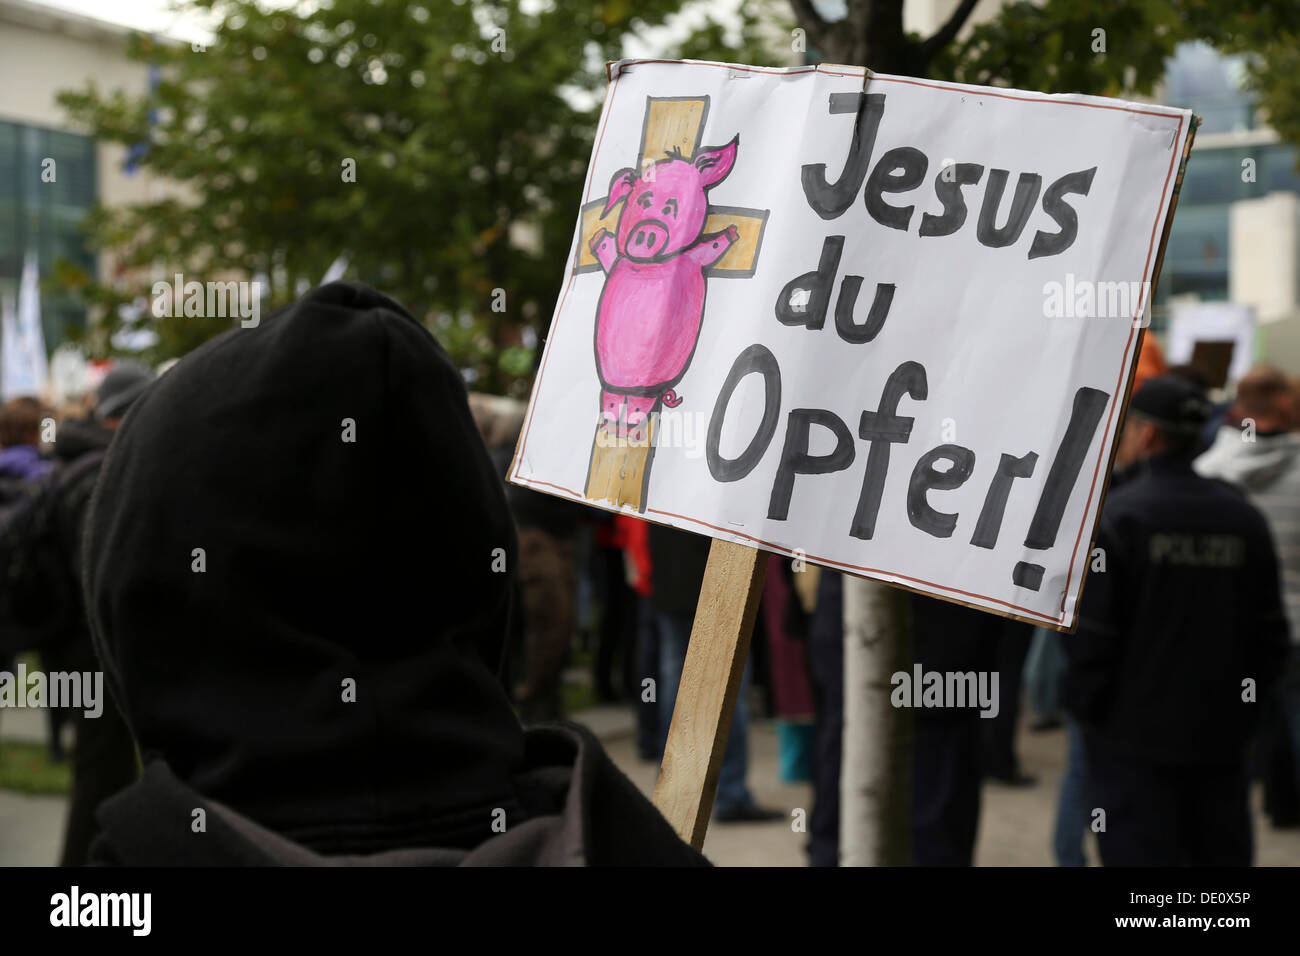 Segno, lettering "Gesù du Opfer', tedesco per "Gesù, tu sei la vittima, protesta contro il fondamentalismo cristiano e per il Foto Stock